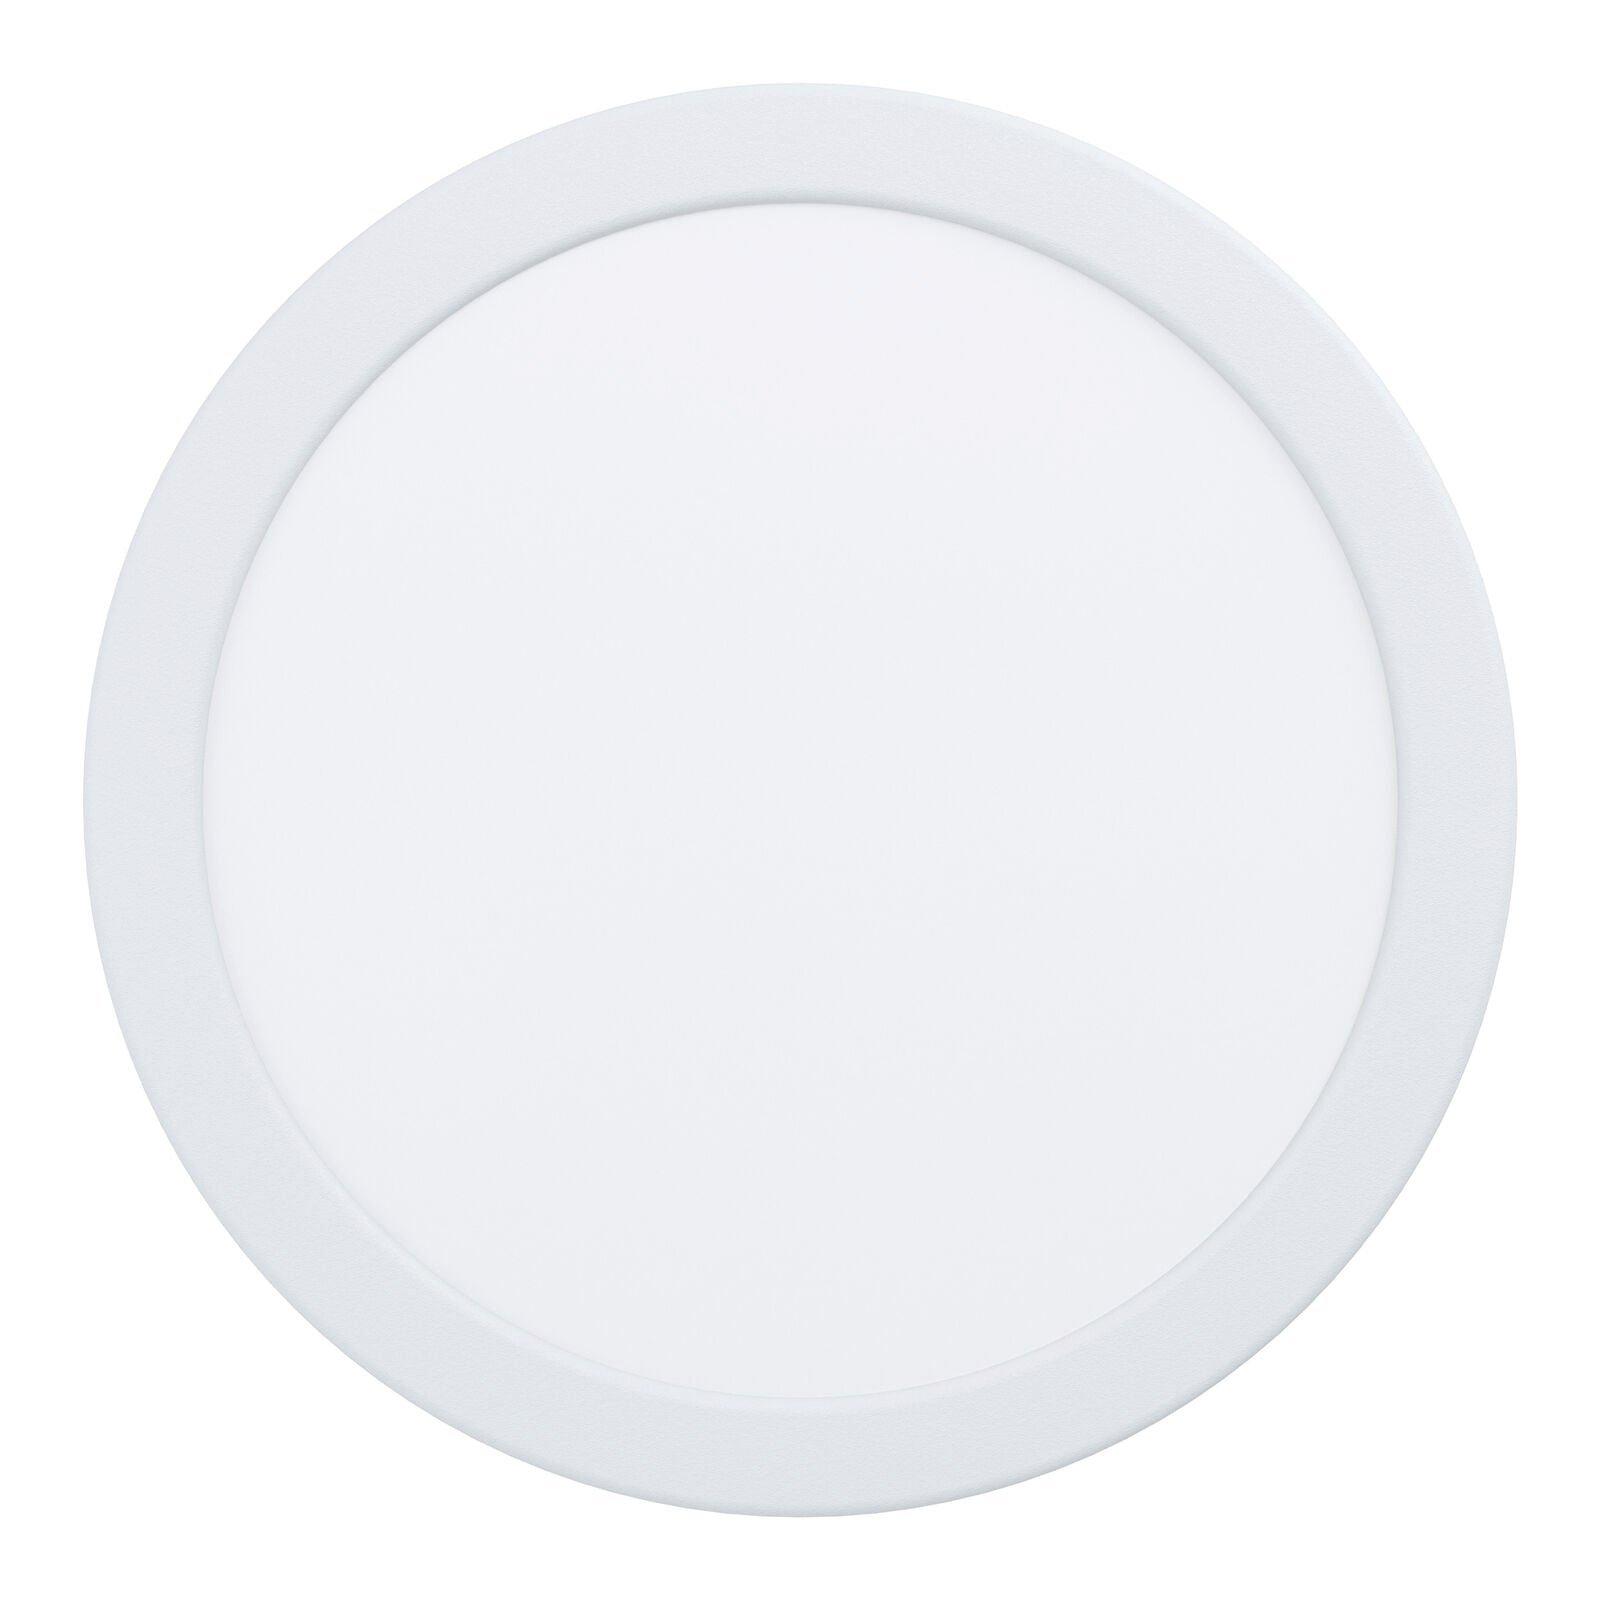 Wall / Ceiling Flush Downlight White Round Spotlight 16.5W Built in LED 3000K